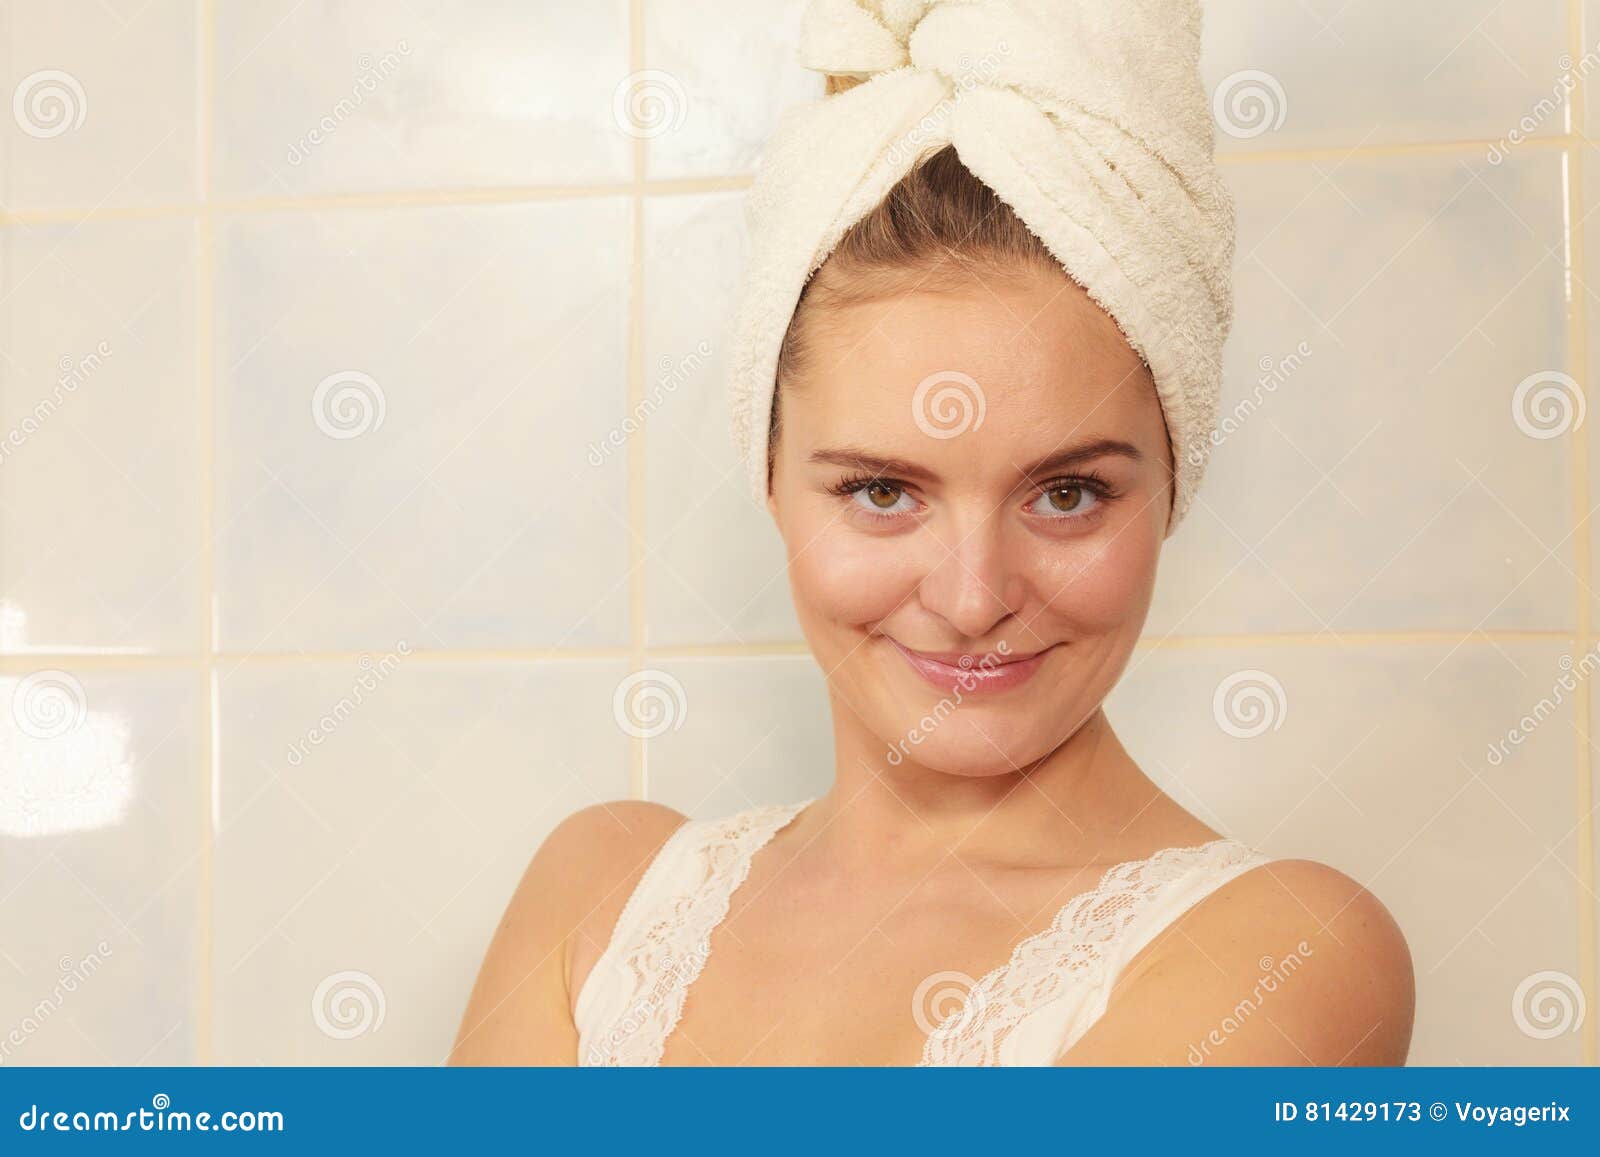 Жена после ванны. Девушка в полотенце. Девушка после ванной. Женщины завёрнутые в полотенце. Полотенце завернутое на голове.